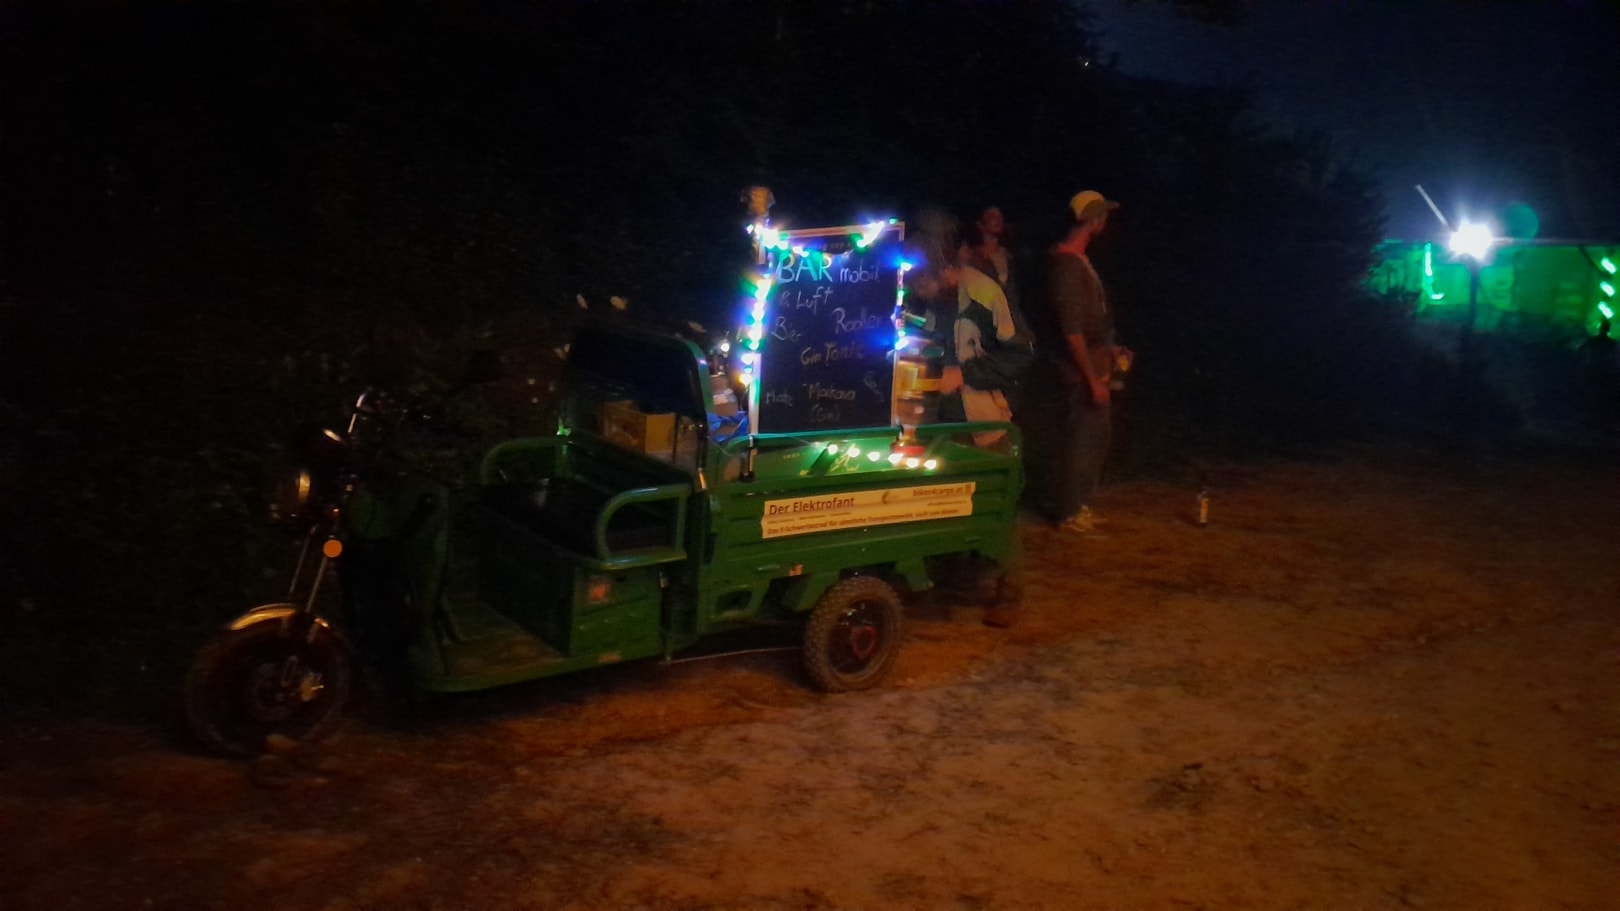 Der Elektrofant als mobile Bar auf dem Peal Festival. Lastenradvermietung für Events von bikes4cargo